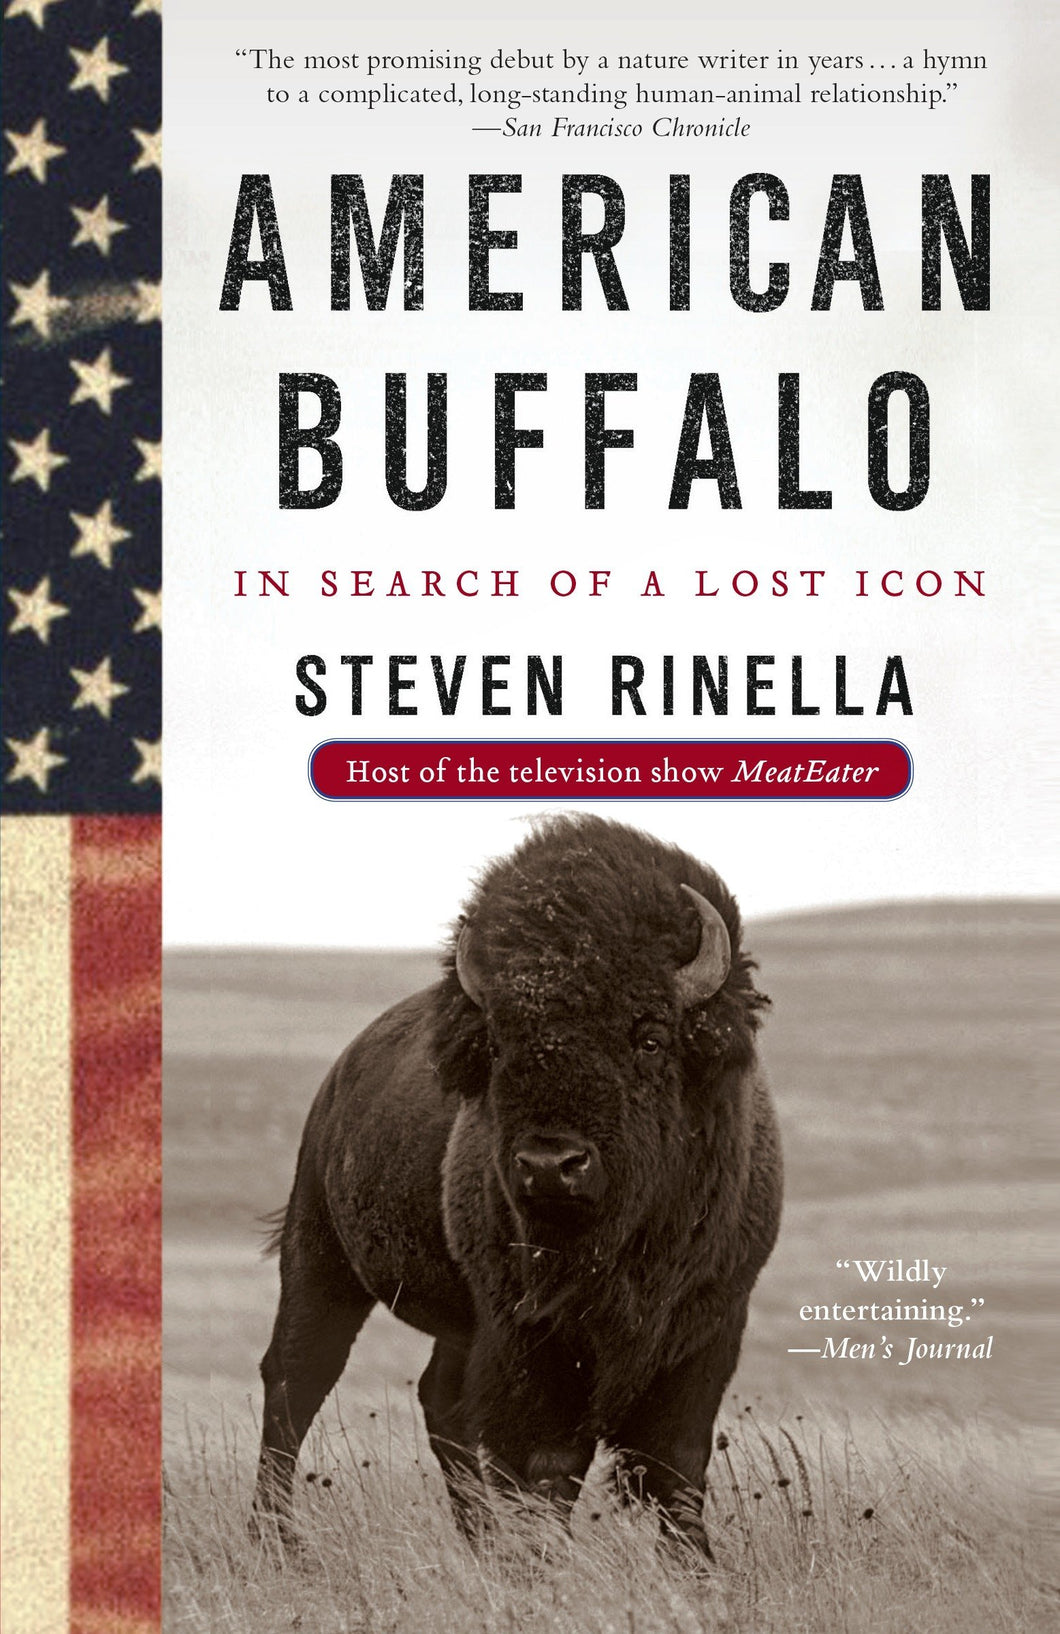 American Buffalo: In Search of a Lost Icon [Steven Rinella]